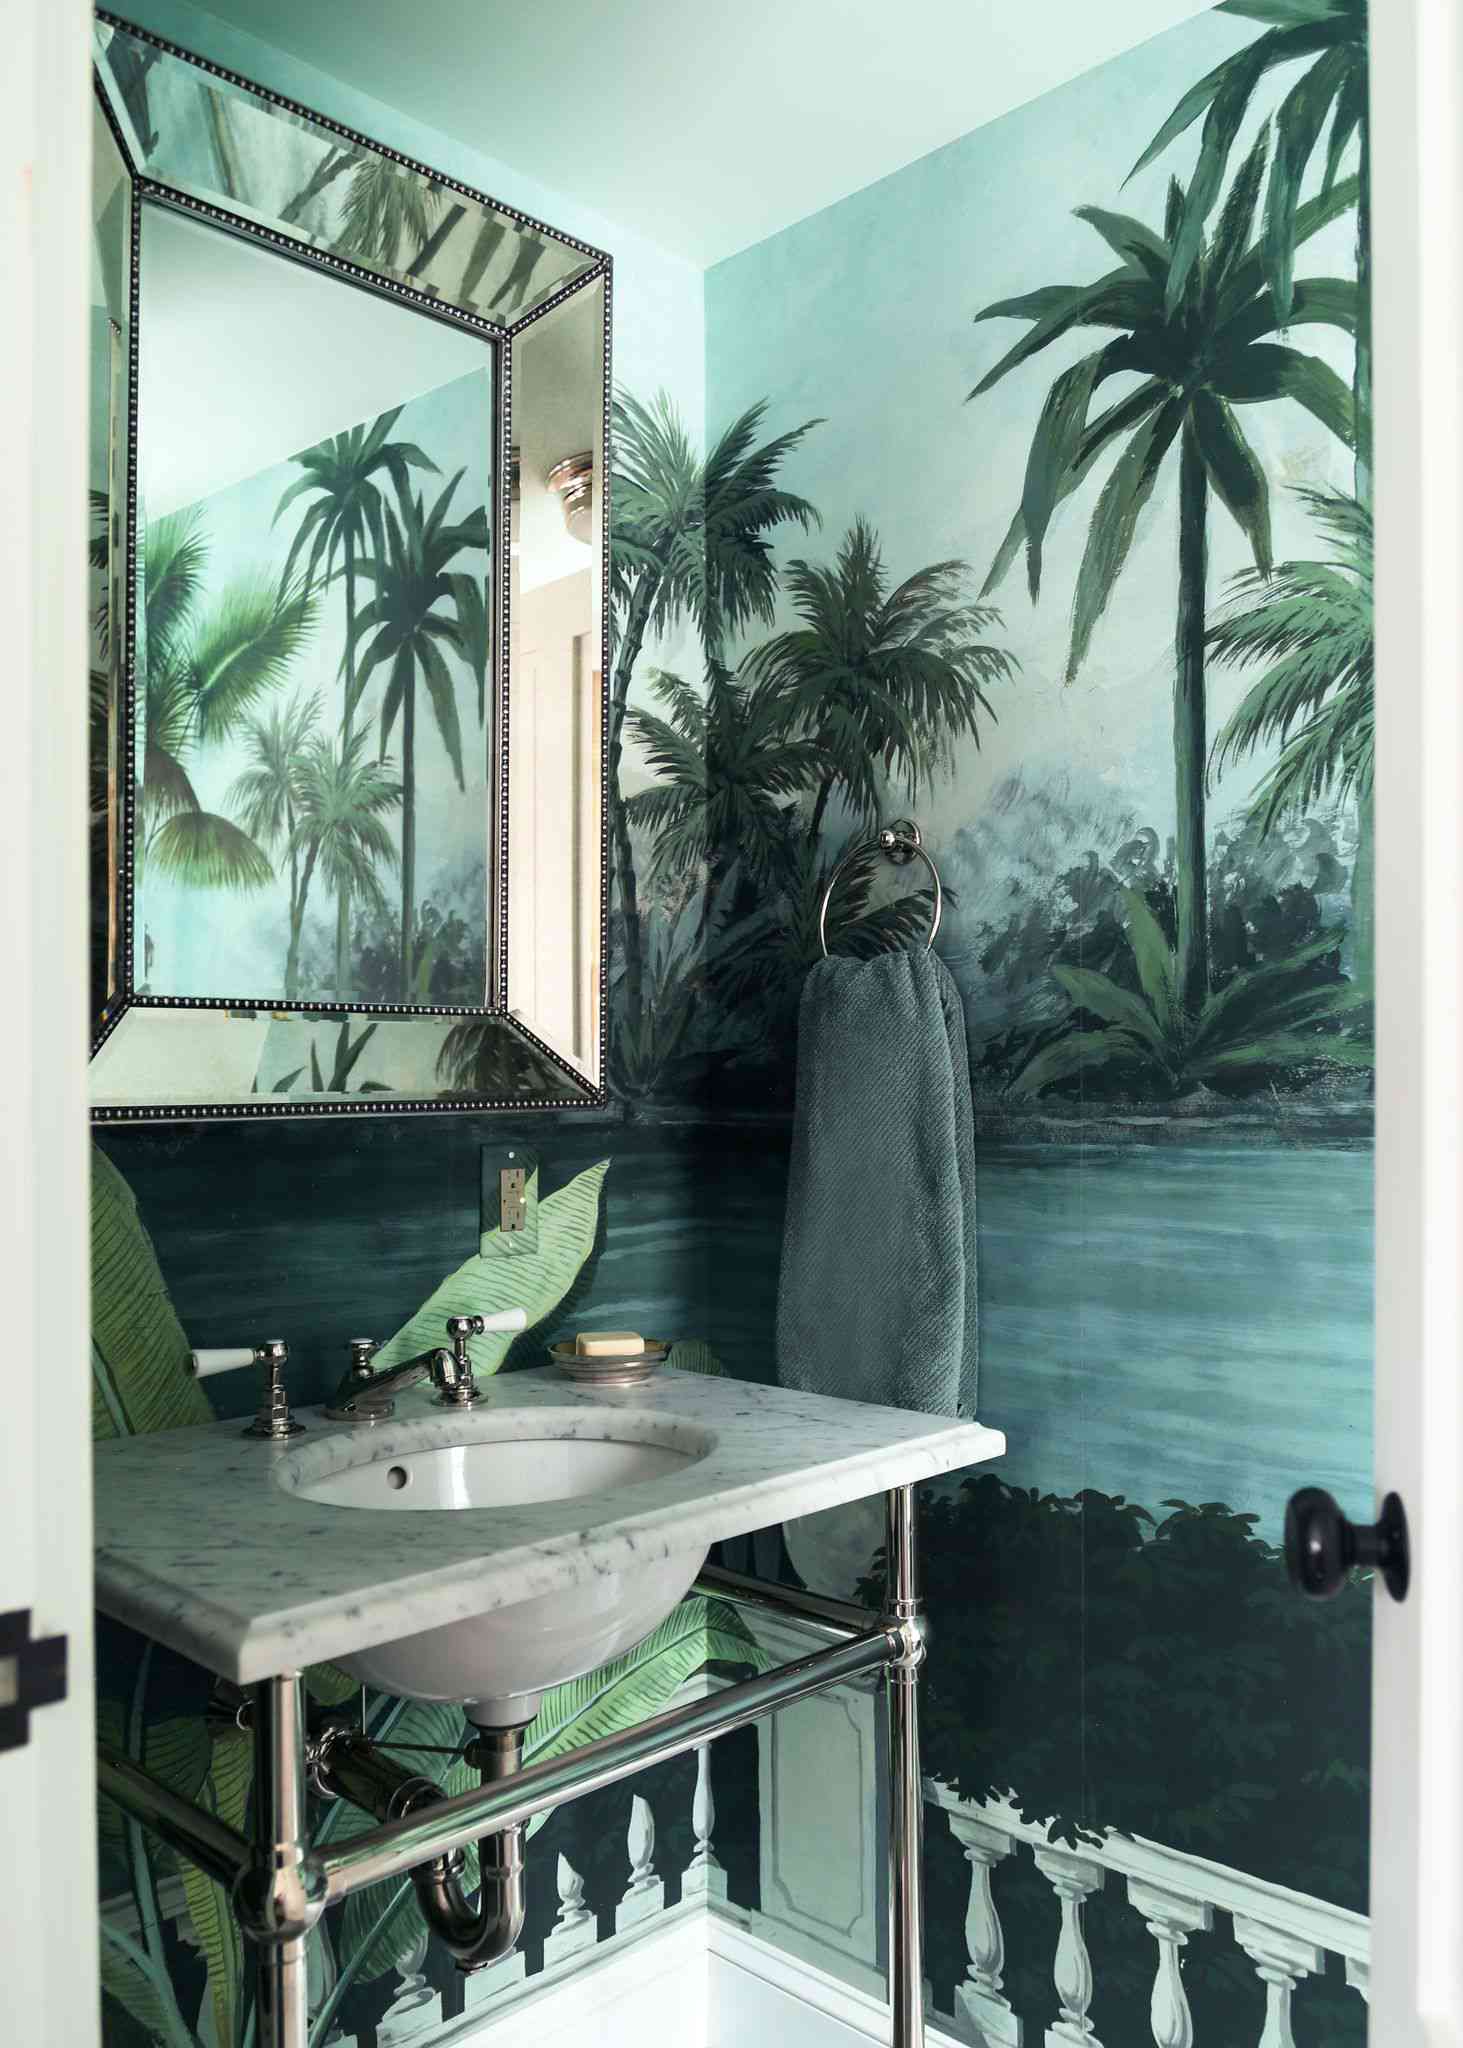 Tropische Wandtapete der französischen Marke Ananbo, verwendet in einem Badezimmer auf Martha's Vineyard